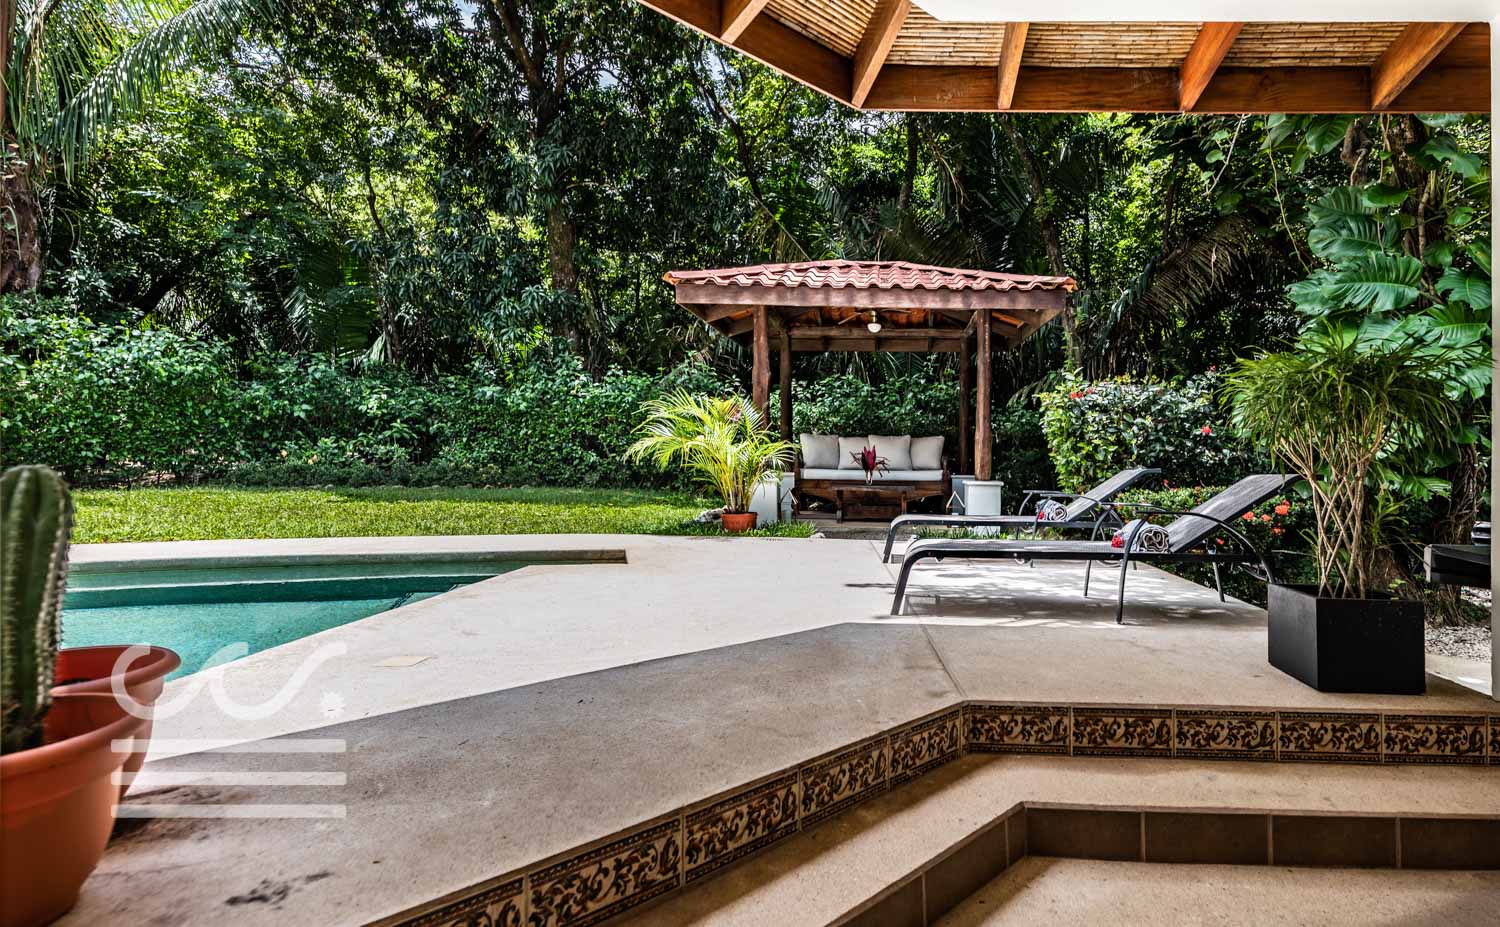 Casa-de-Sueño-Wanderlust-Realty-Real-Estate-Rentals-Nosara-Costa-Rica-5.jpg